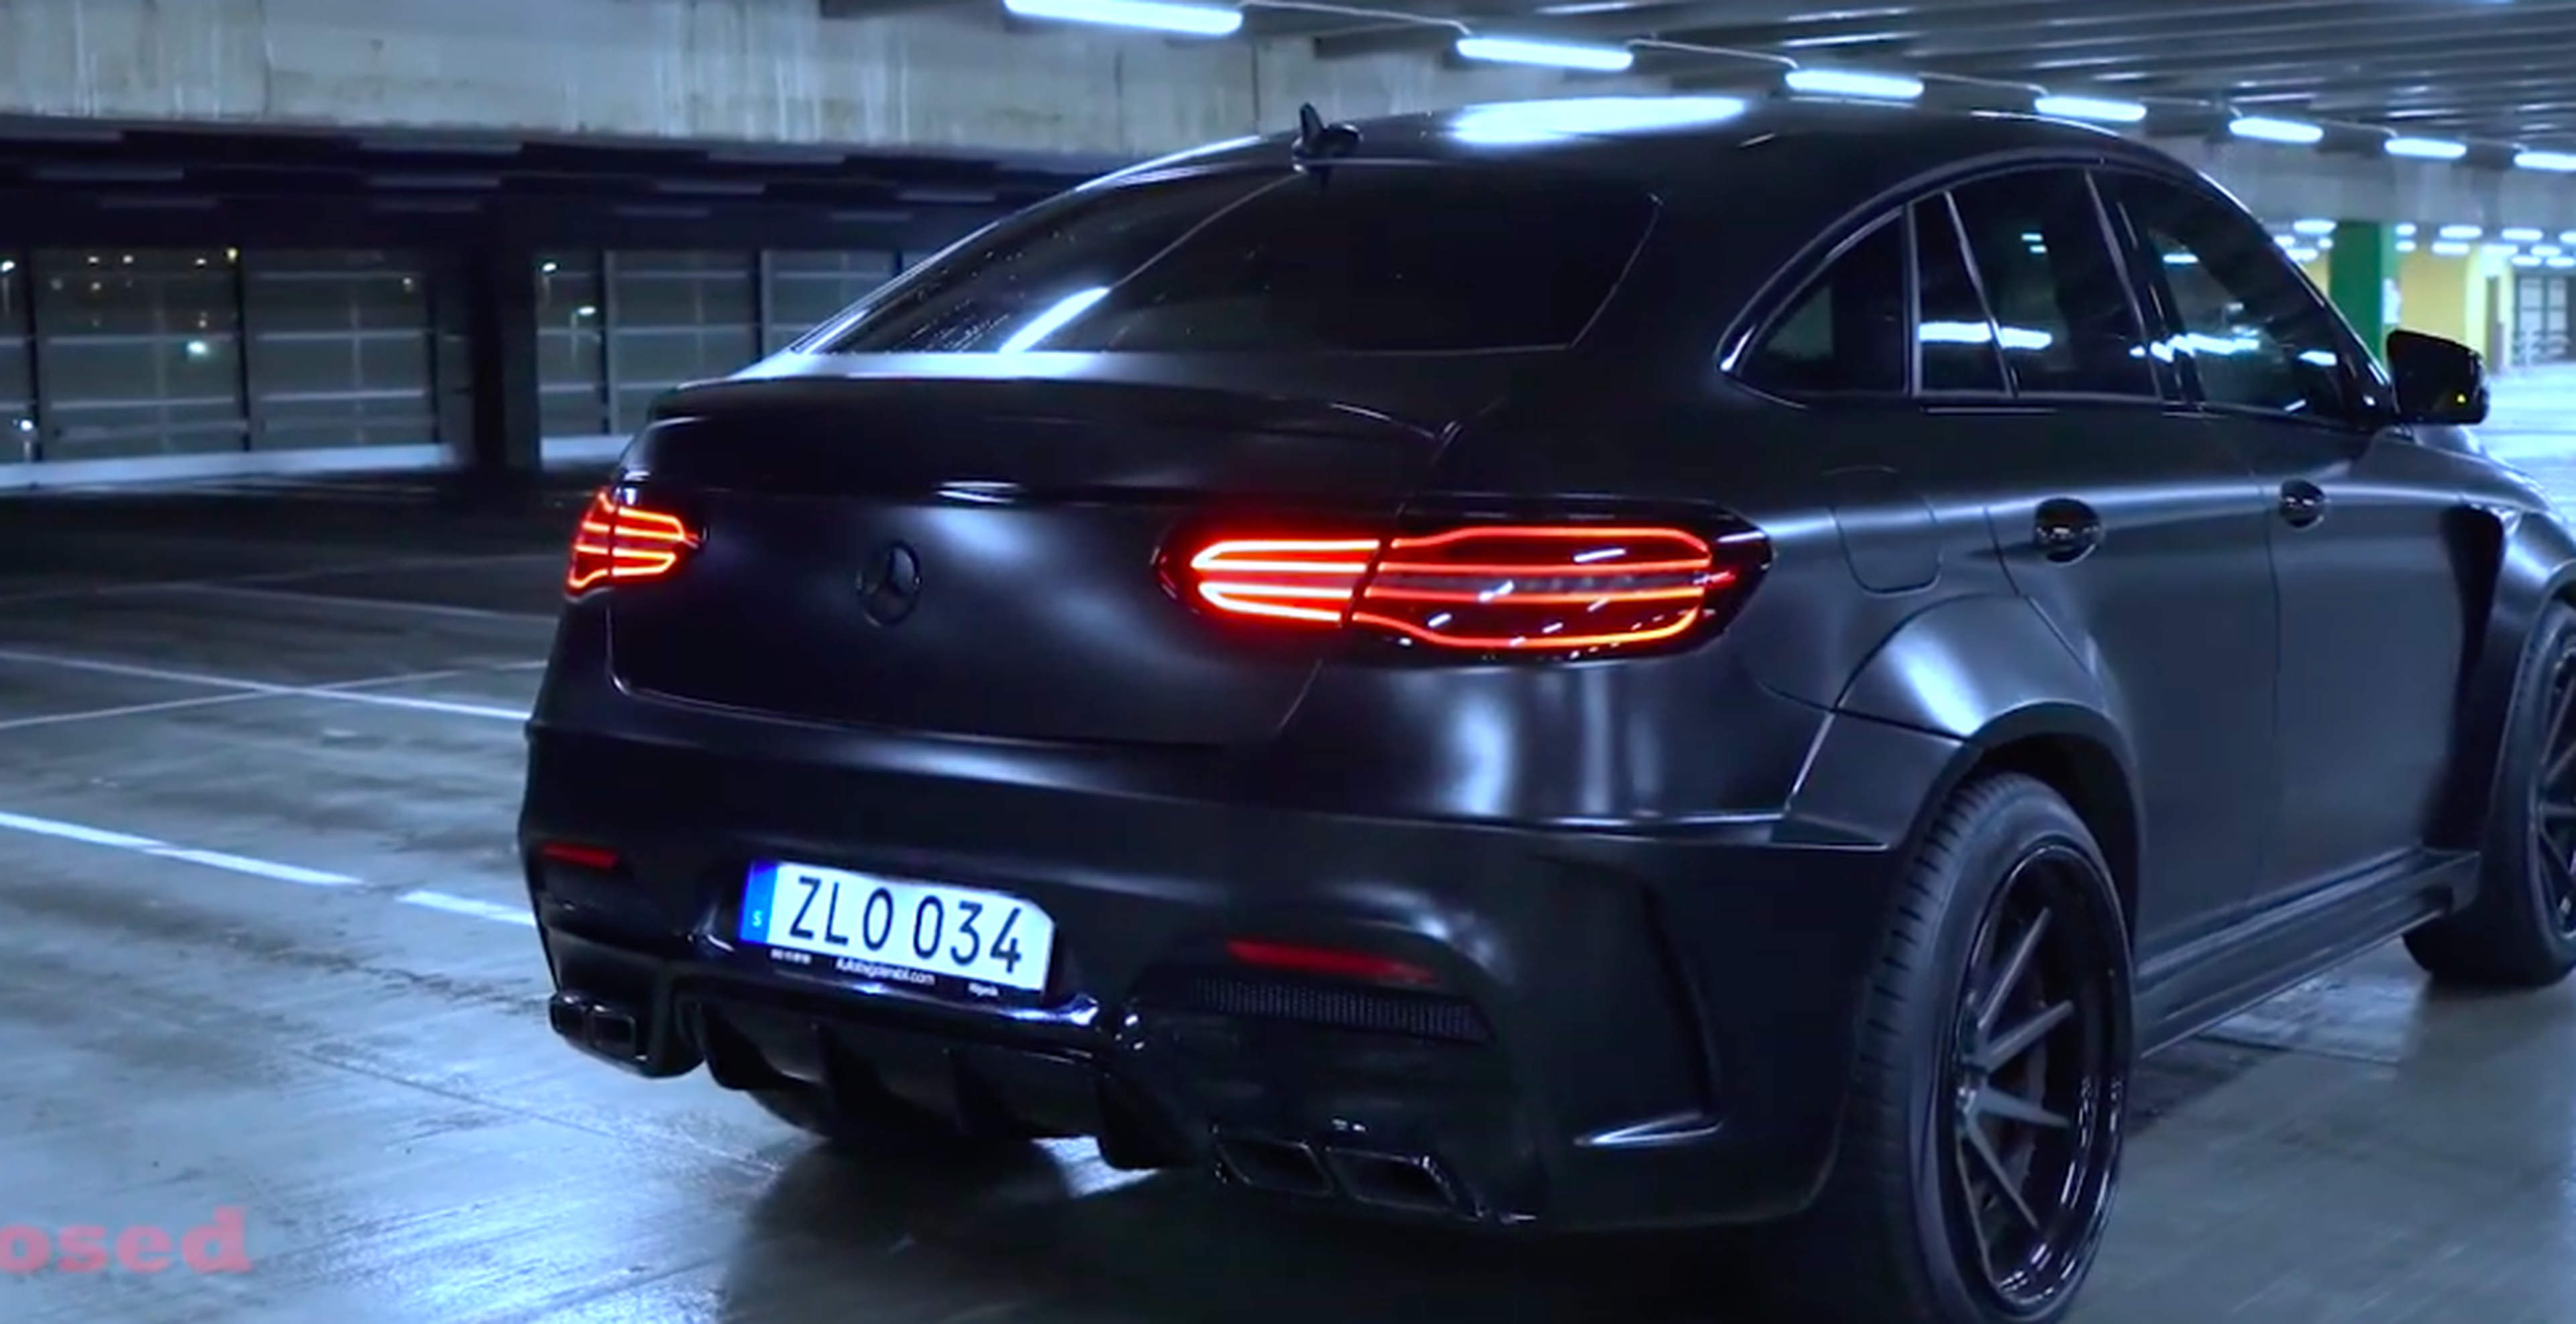 VÍDEO: este es el Mercedes-AMG GLE 63 S más bestia que has visto, ¡sube el volumen!